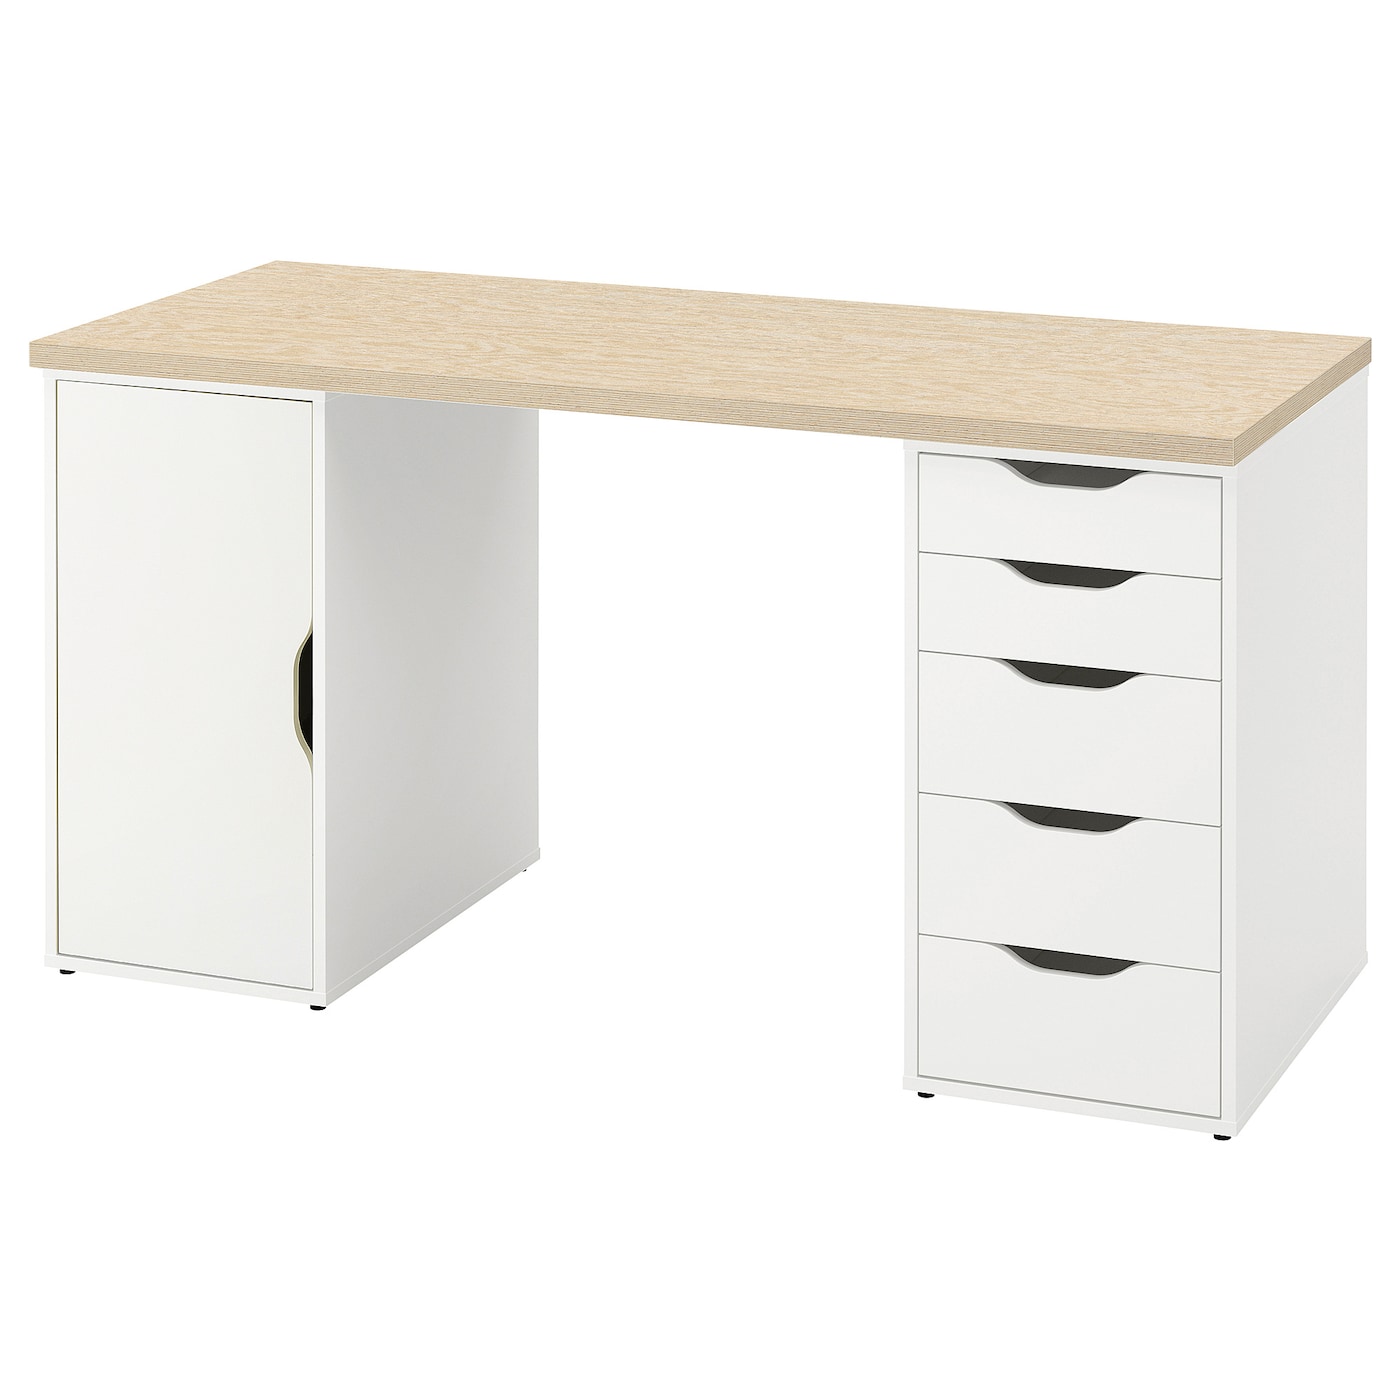 Письменный стол с ящиками - IKEA ALEX/АЛЕКС ИКЕА, 140x60 см, сосна/белый